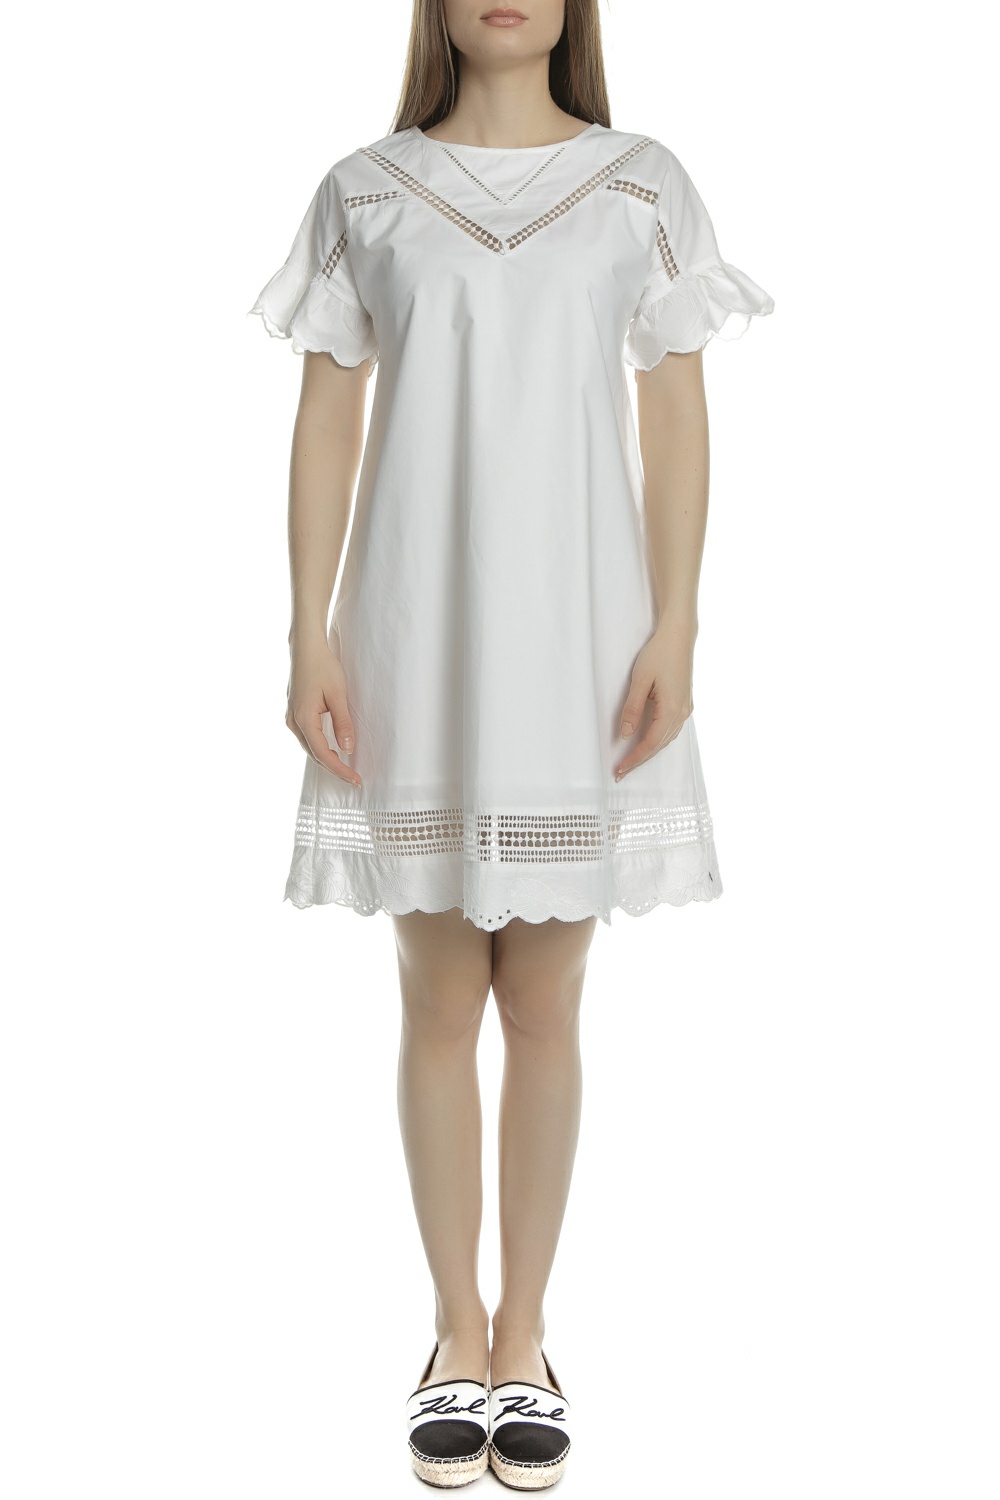 SCOTCH & SODA - Γυναικείο μίνι φόρεμα SCOTCH & SODA λευκό Γυναικεία/Ρούχα/Φορέματα/Μίνι